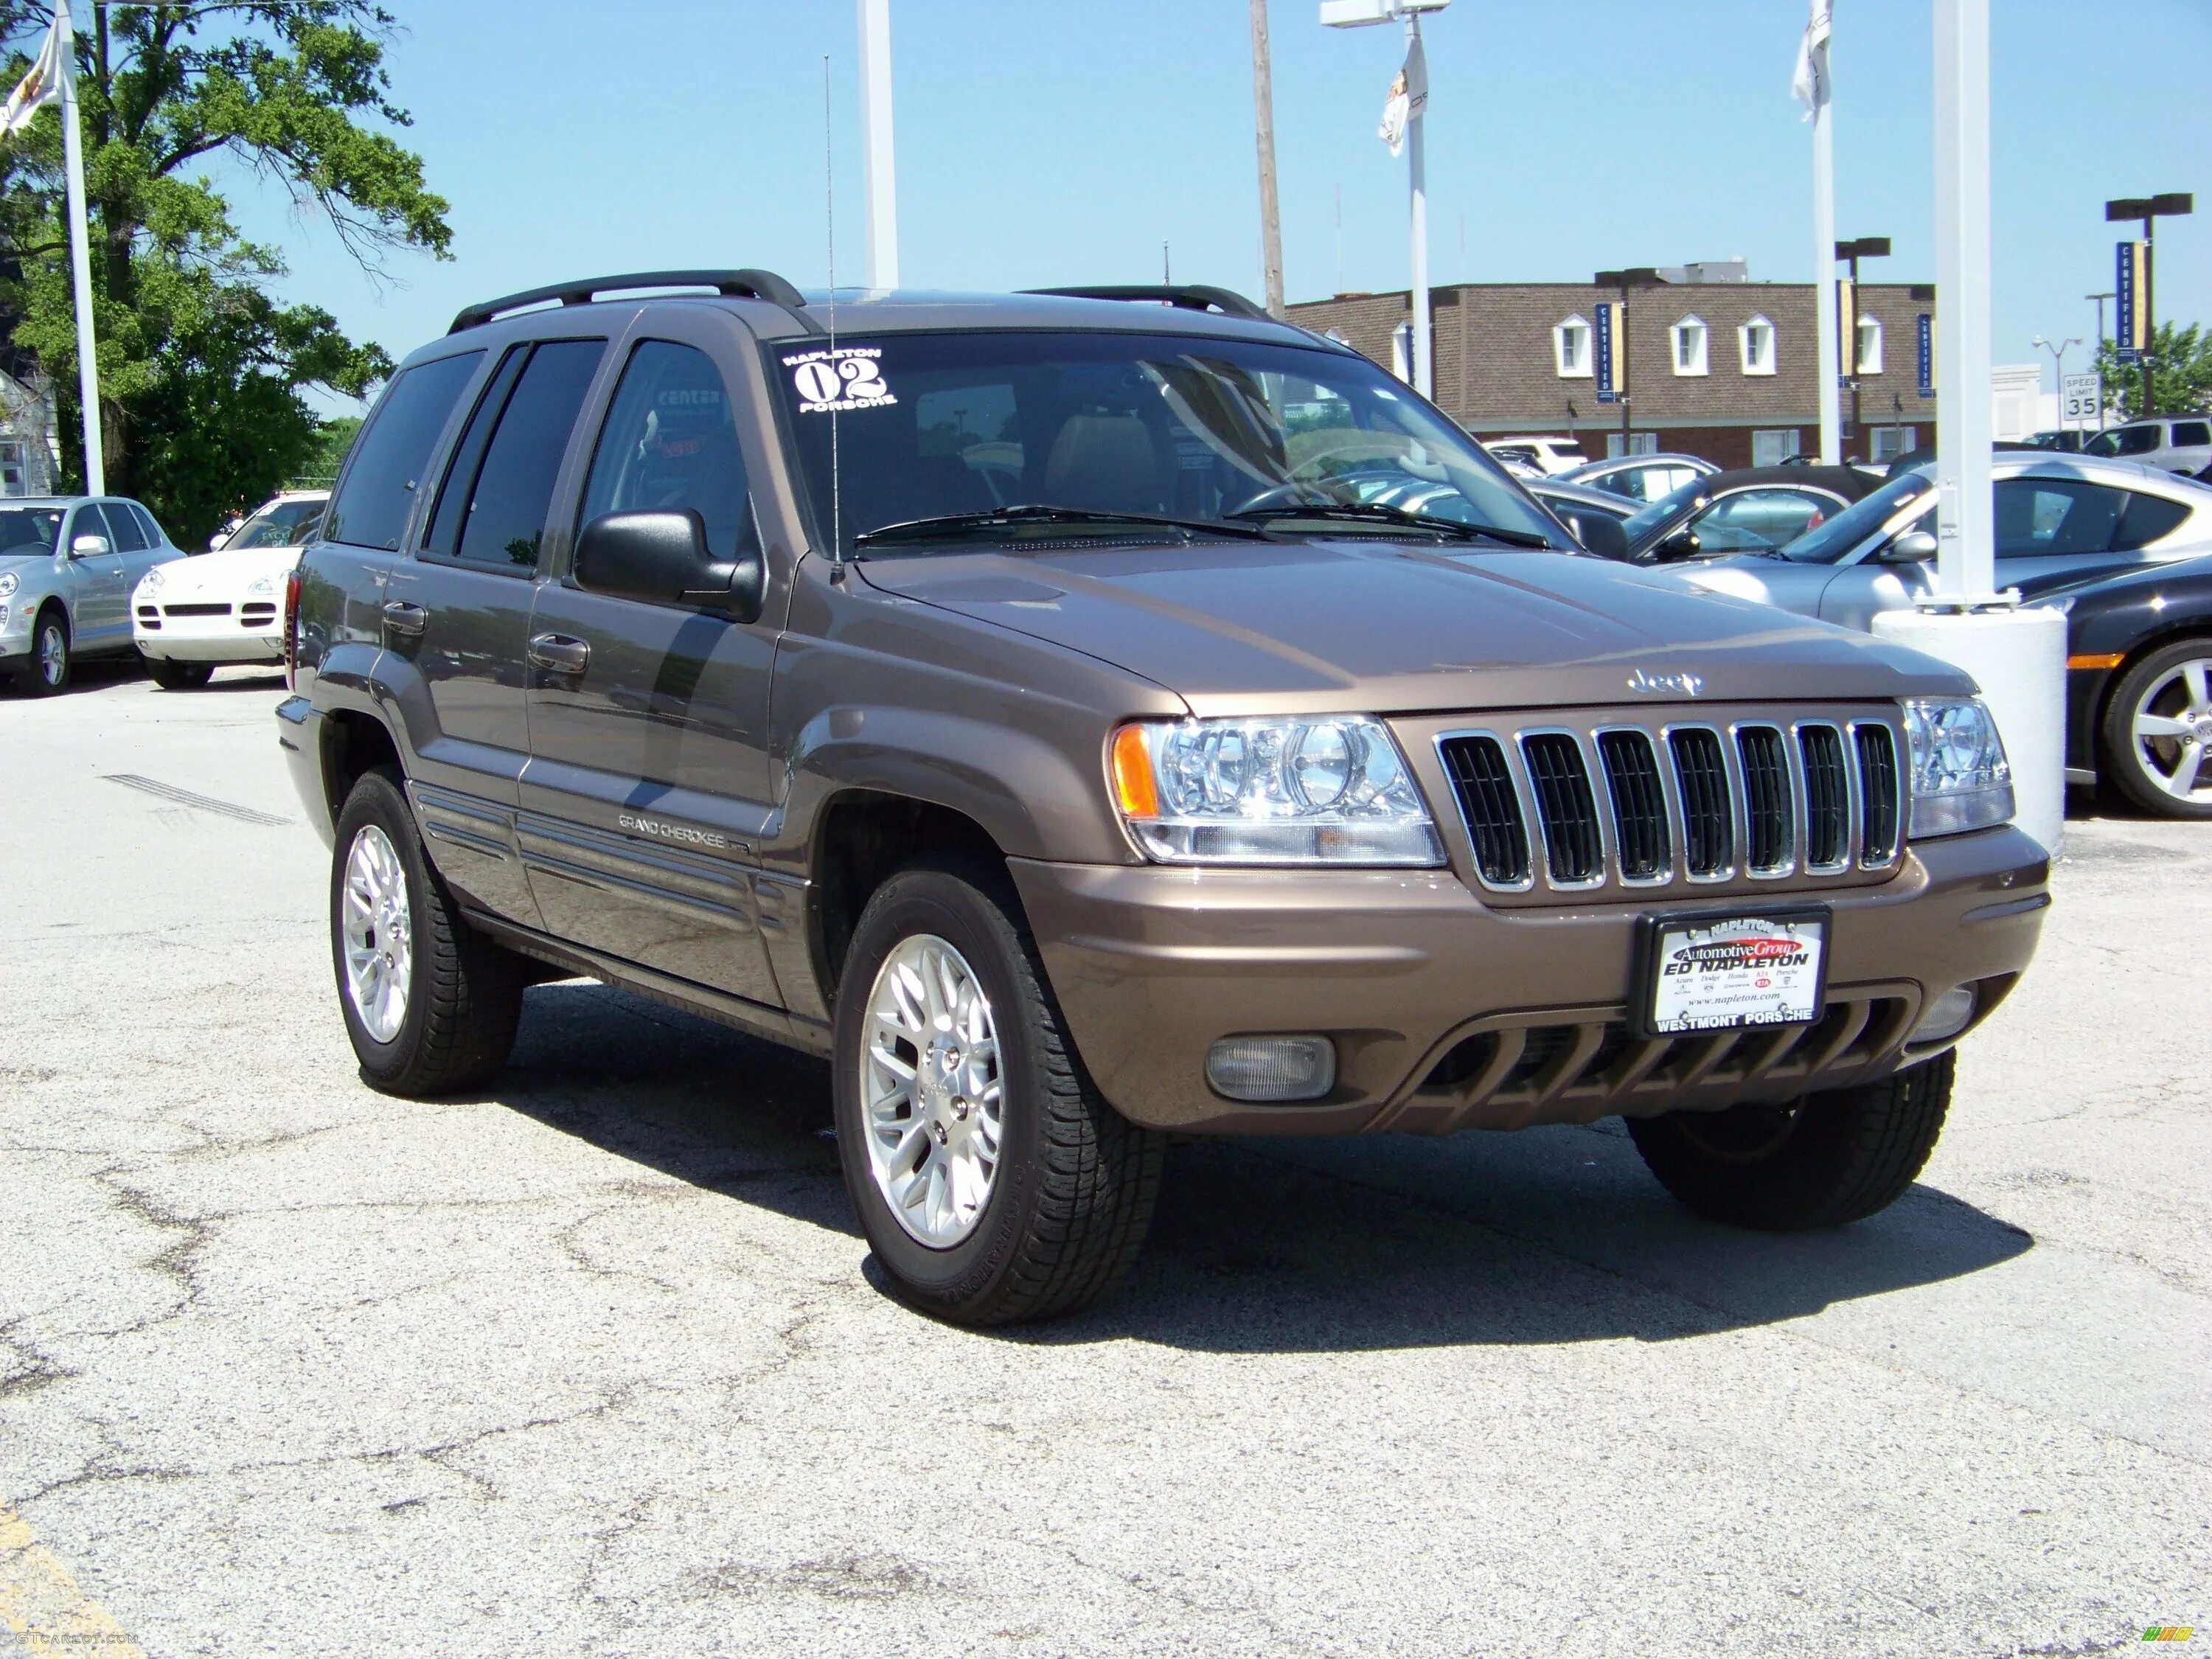 Cherokee limited. Jeep Grand 2002. Jeep Cherokee 2002 Limited. Jeep Grand Cherokee 2002. Jeep Grand Cherokee Limited 1993.